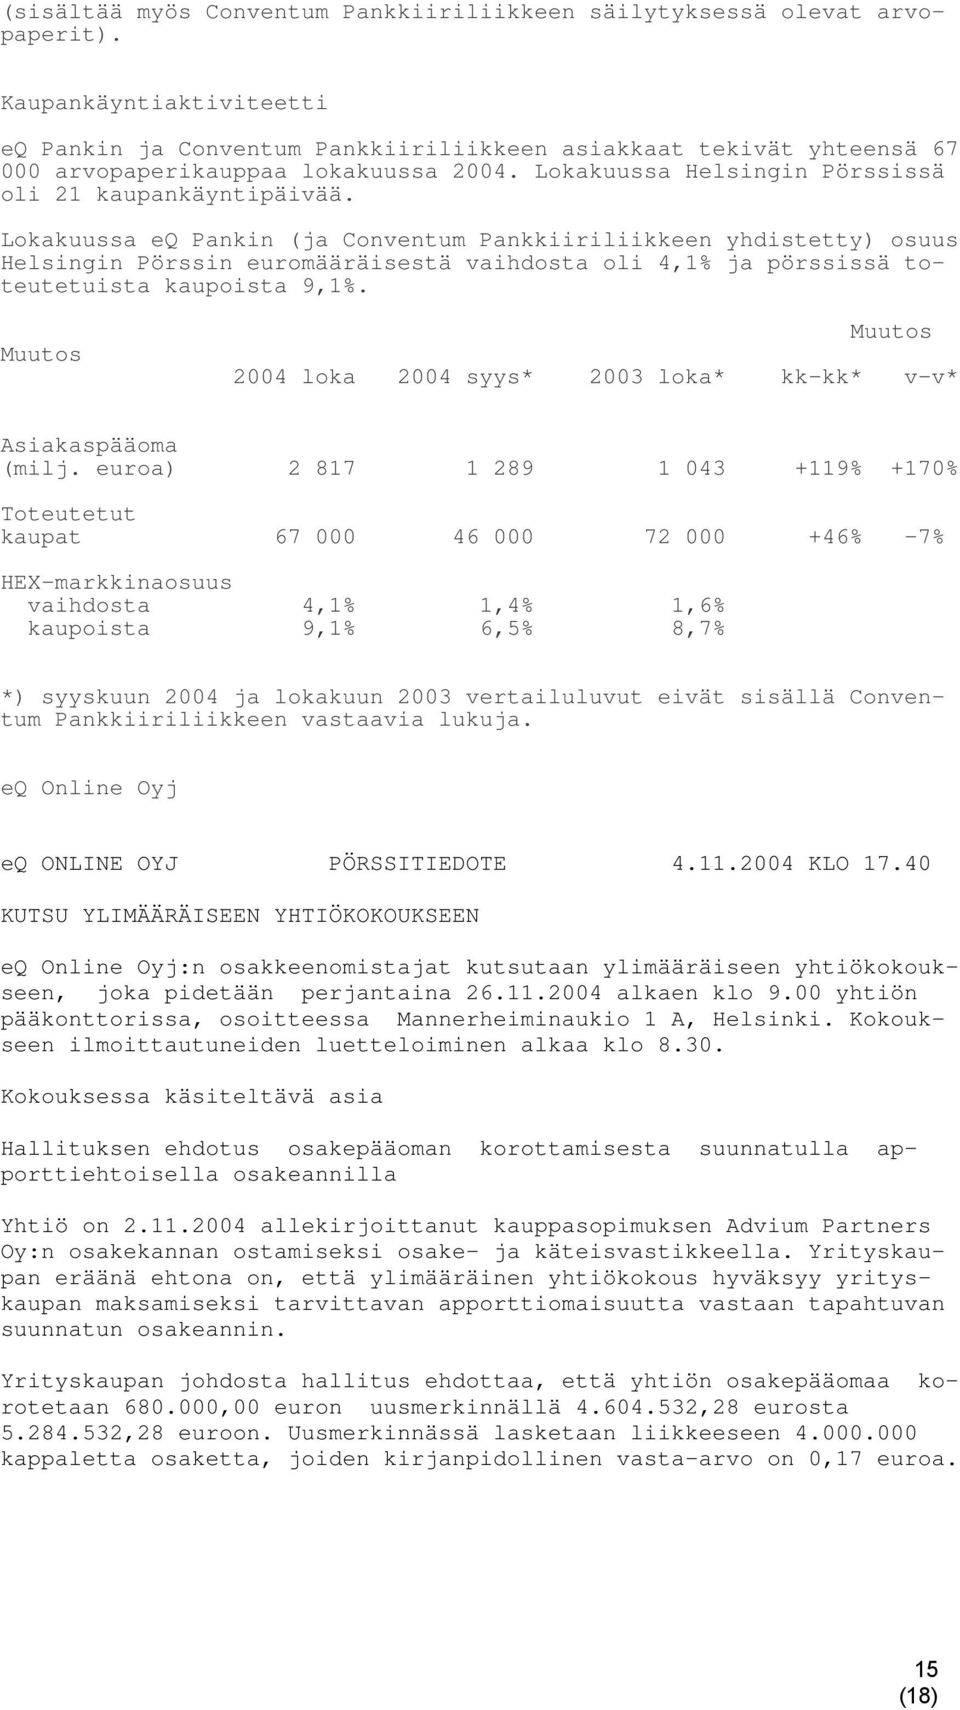 Lokakuussa eq Pankin (ja Conventum Pankkiiriliikkeen yhdistetty) osuus Helsingin Pörssin euromääräisestä vaihdosta oli 4,1% ja pörssissä toteutetuista kaupoista 9,1%.